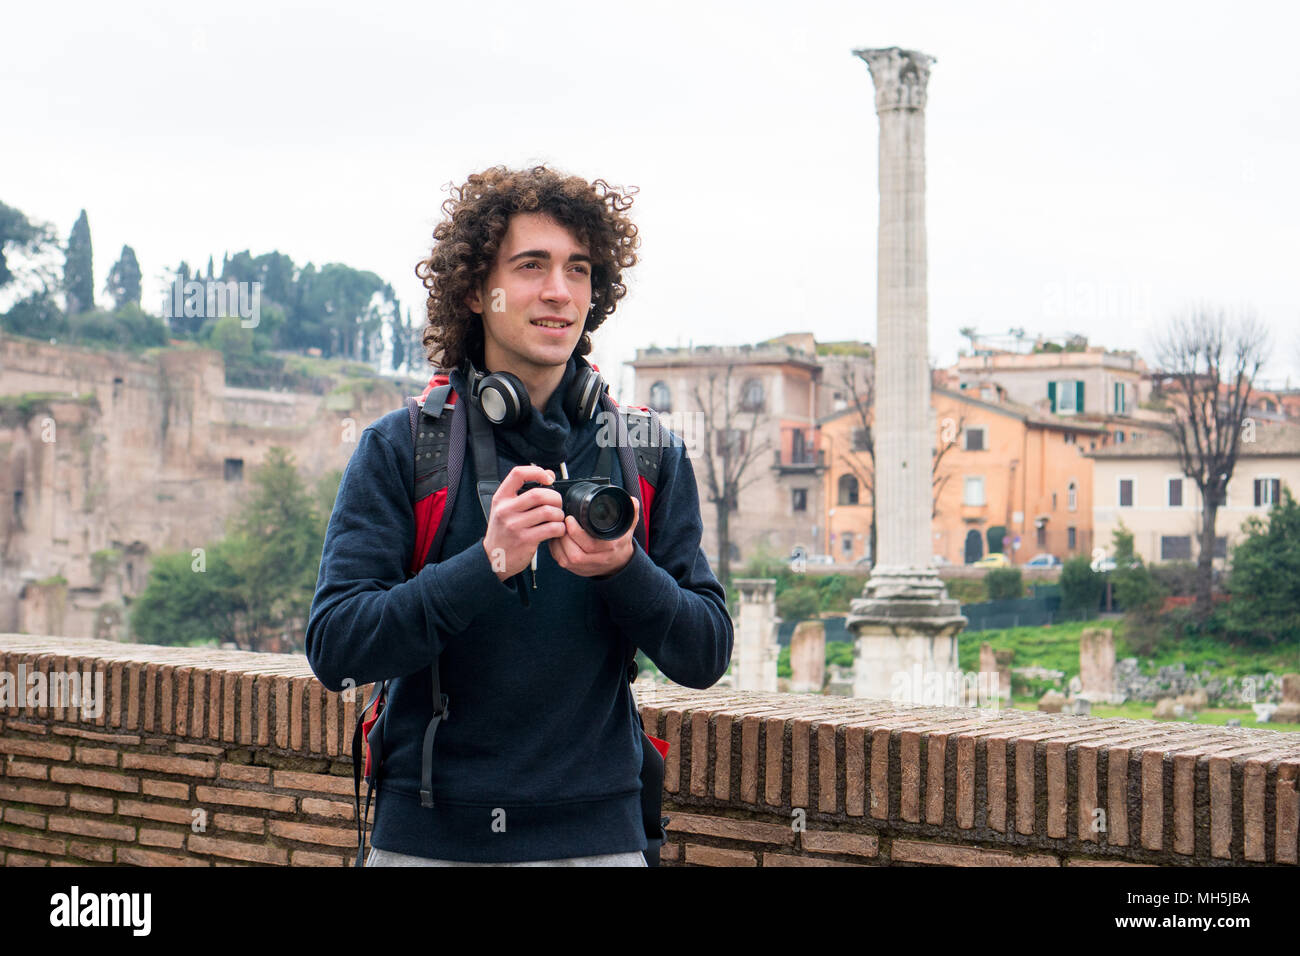 Beau jeune touriste avec les cheveux bouclés à faire des photos de forum Romain à Rome, Italie. Jeune homme voyage avec son appareil photo Banque D'Images